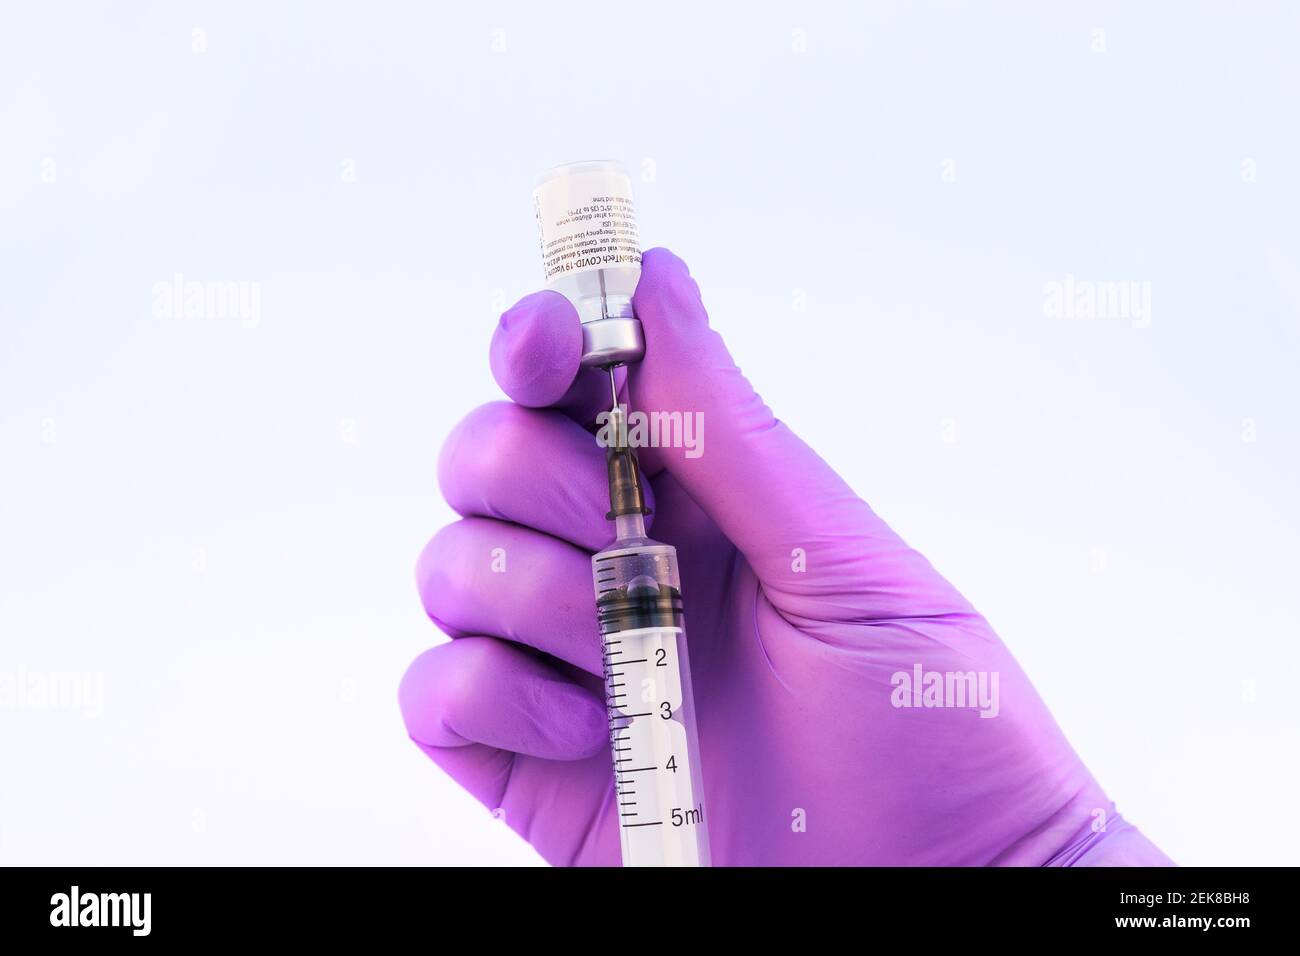 Brasov, Rumania - 21 de febrero de 2021: Médico que usa la vacuna Pfizer-BioNTech Covid-19 sobre fondo blanco. Foto de stock